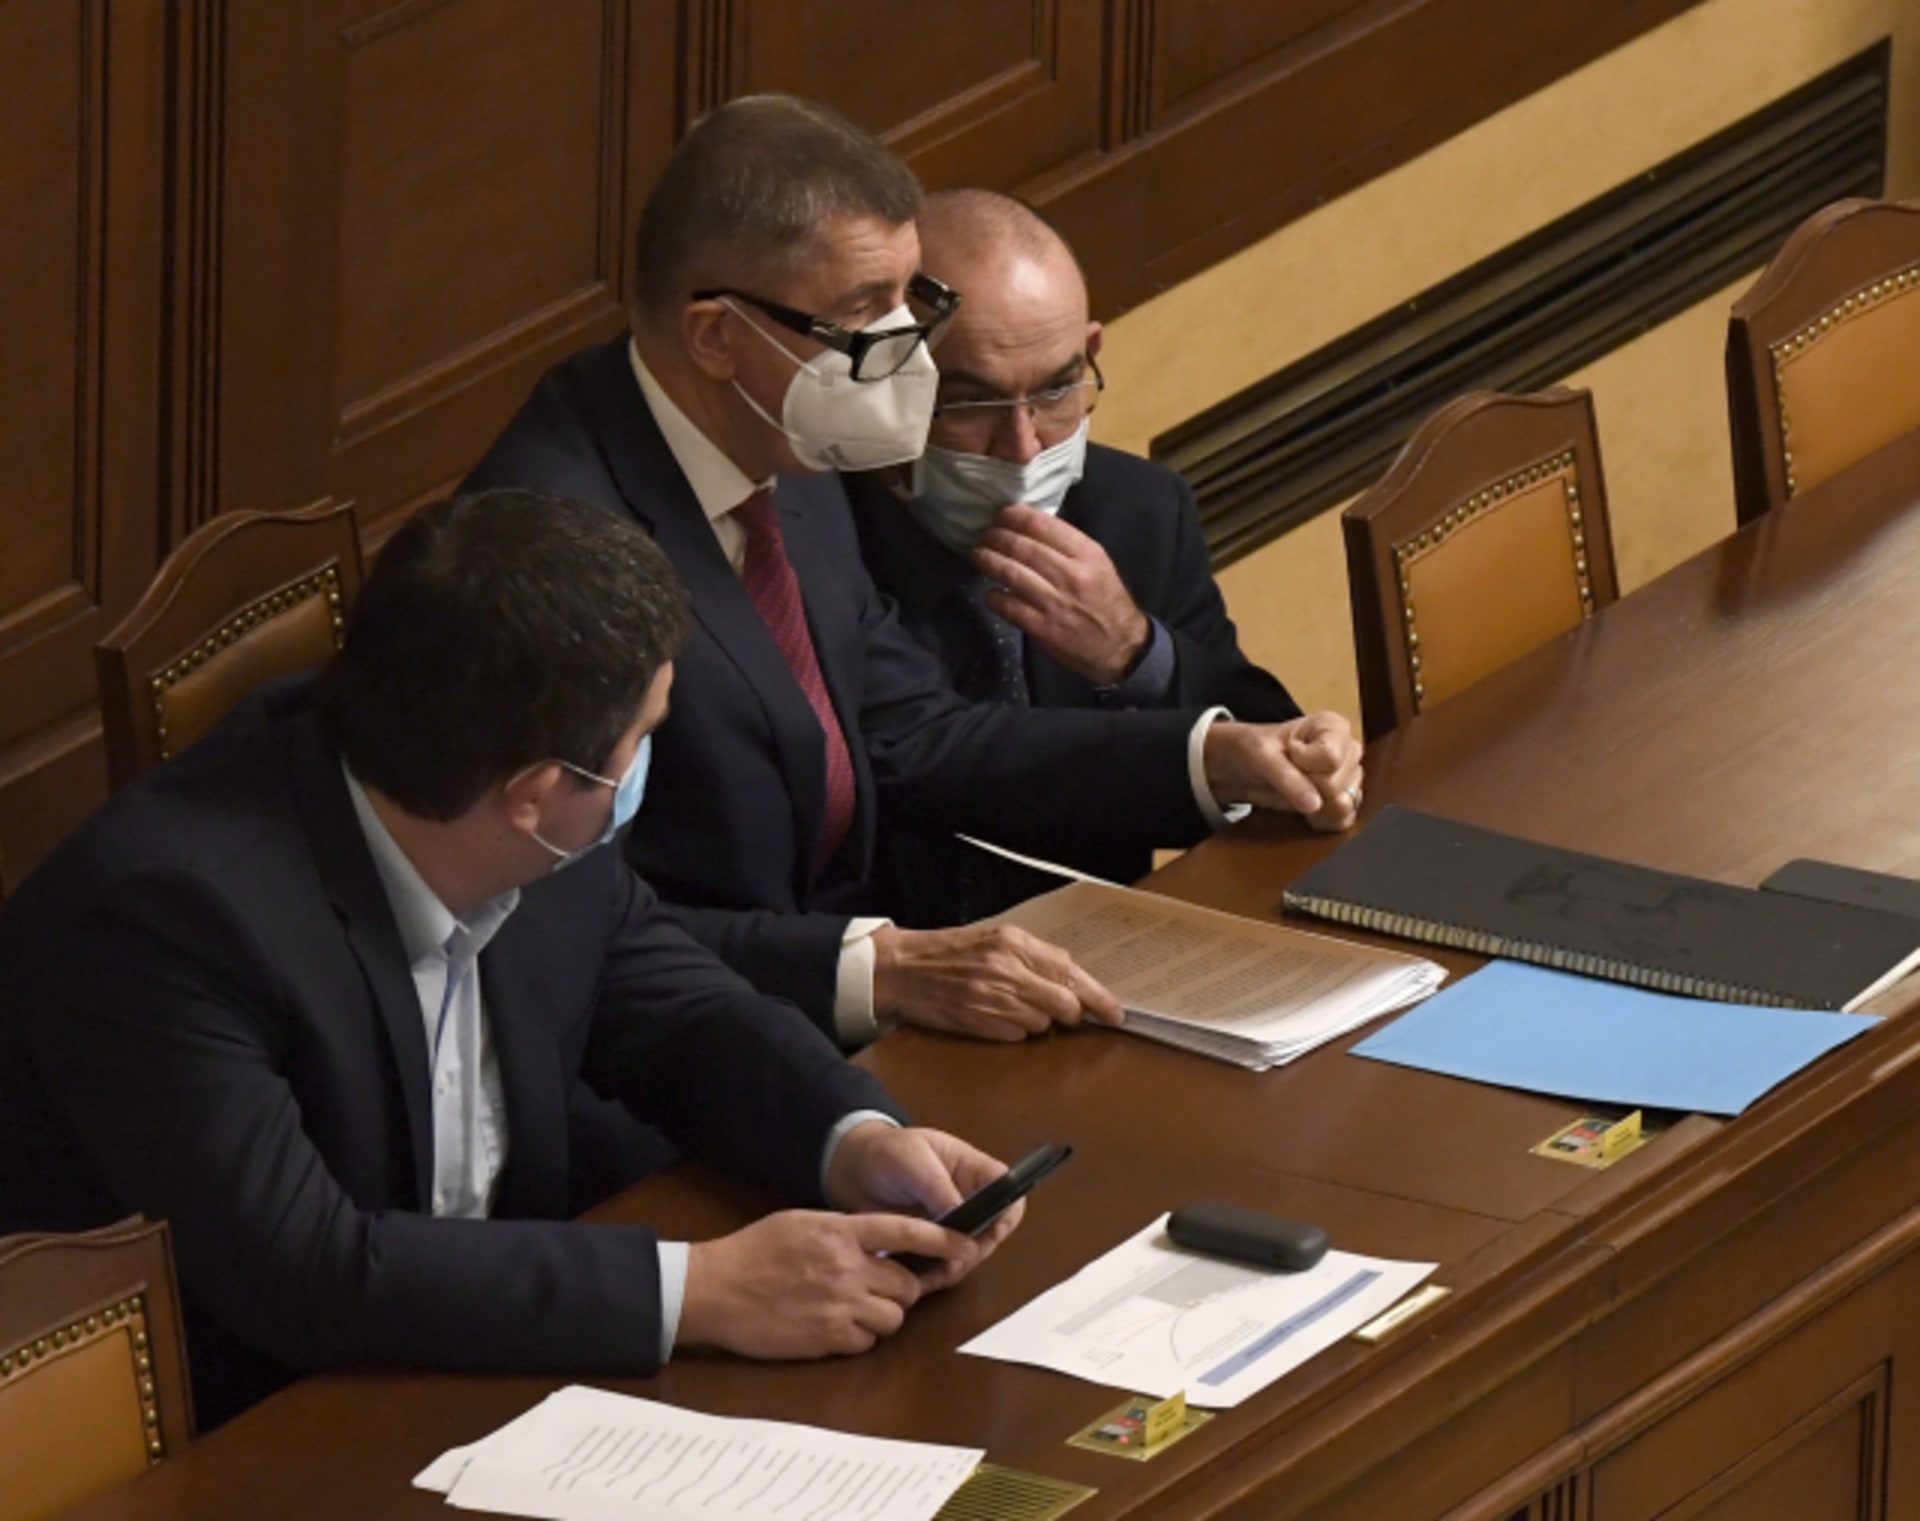 Premiér Andrej Babiš (ANO), ministr zdravotnictví Jan Blatný (za ANO) a vicepremiér Jan Hamáček (ČSSD) ve Sněmovně.